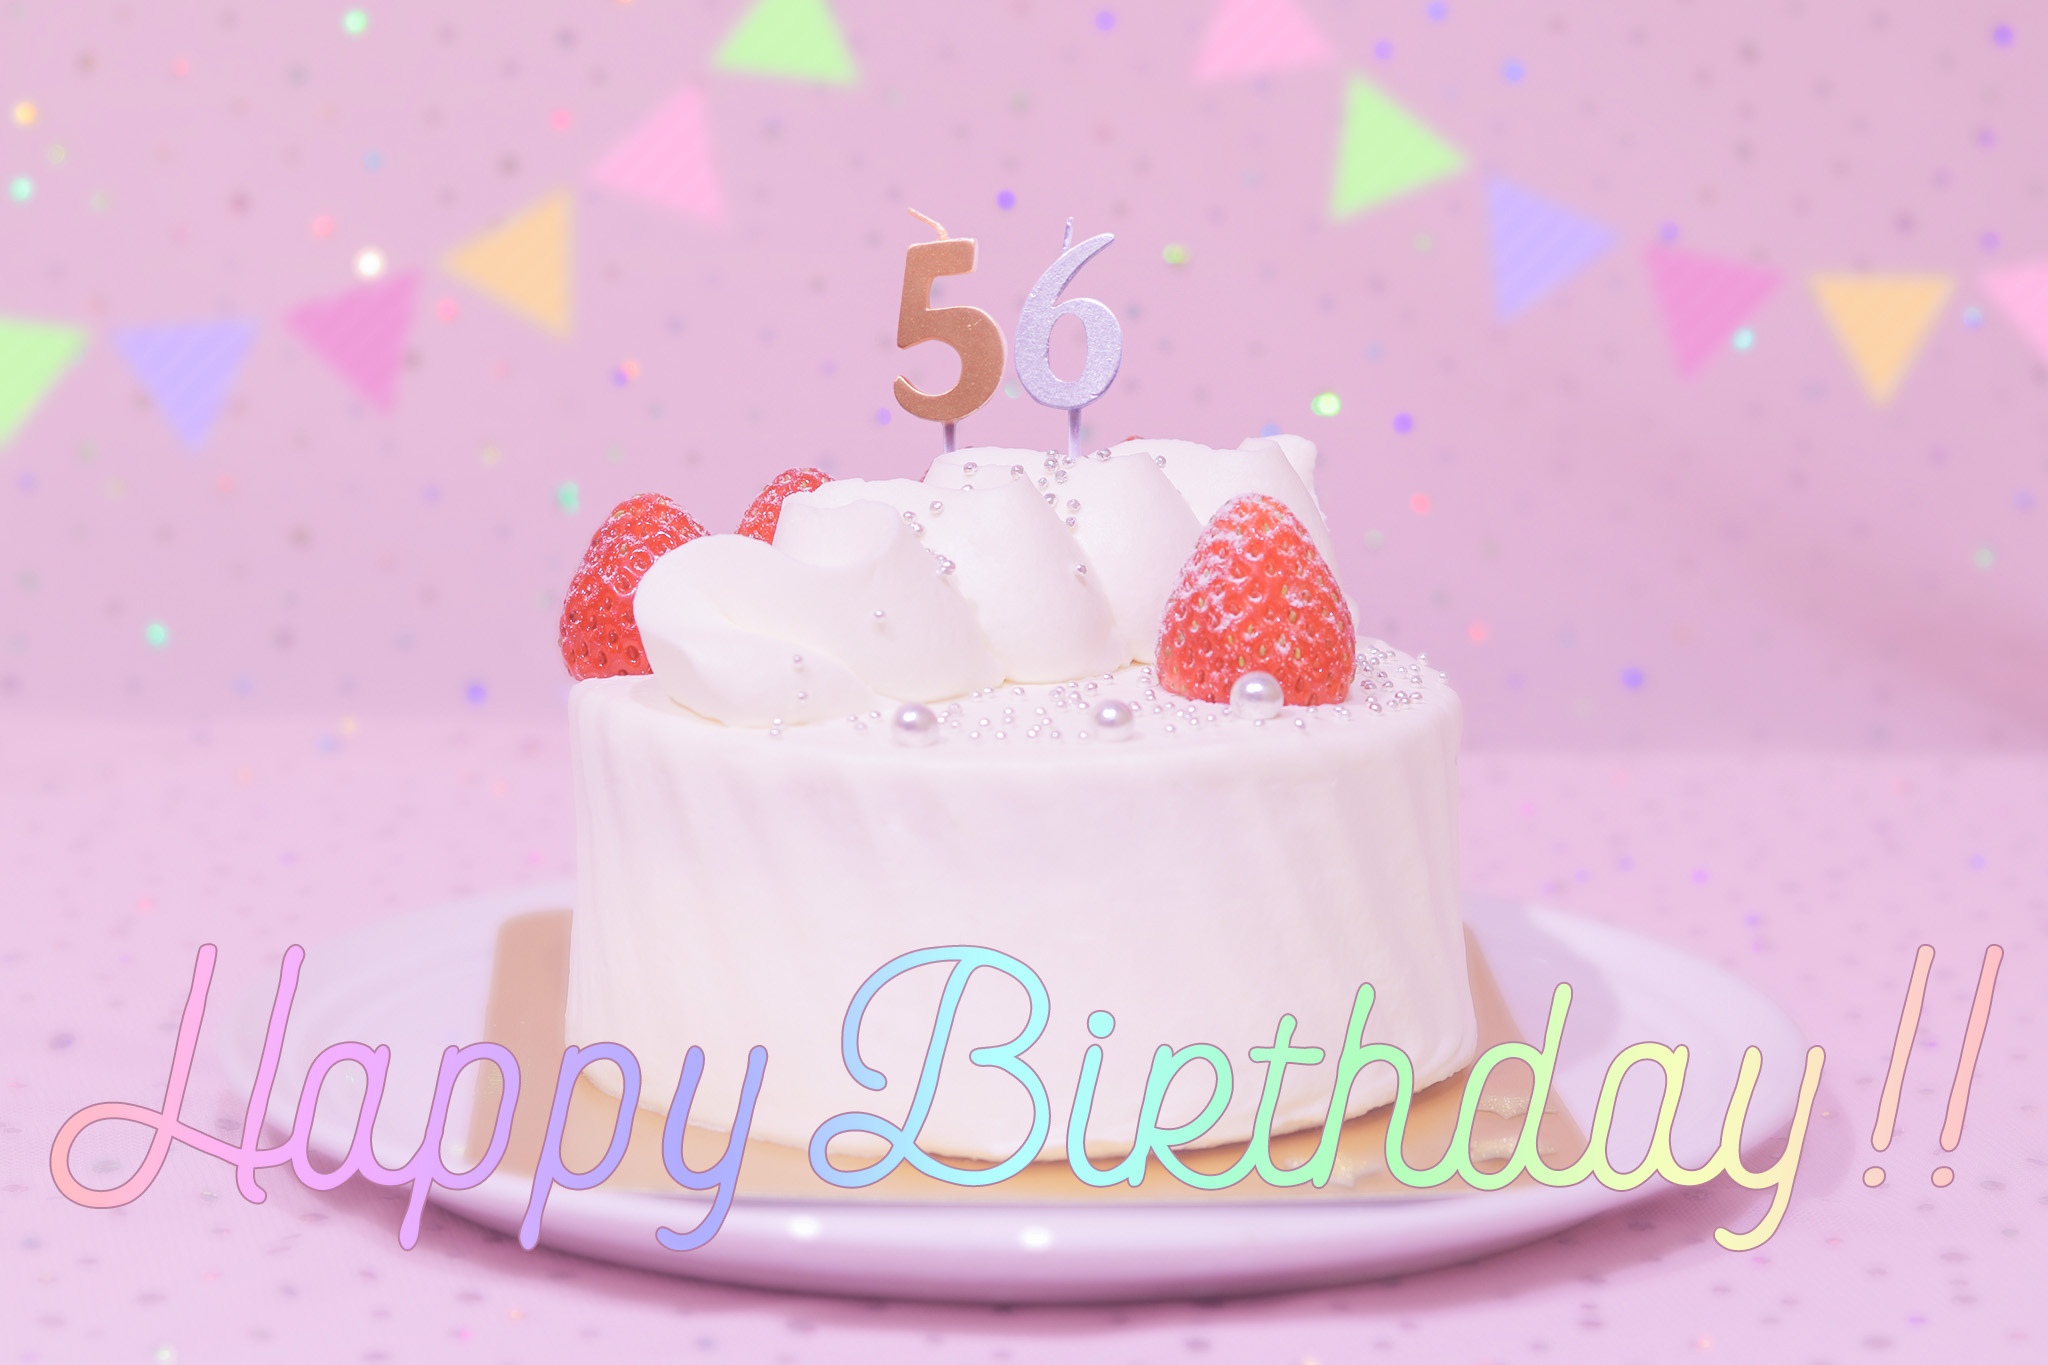 かわいい誕生日画像 ケーキとパステルカラーで可愛くお祝い 56歳編 のフリー画像 おしゃれなフリー写真素材 Girly Drop